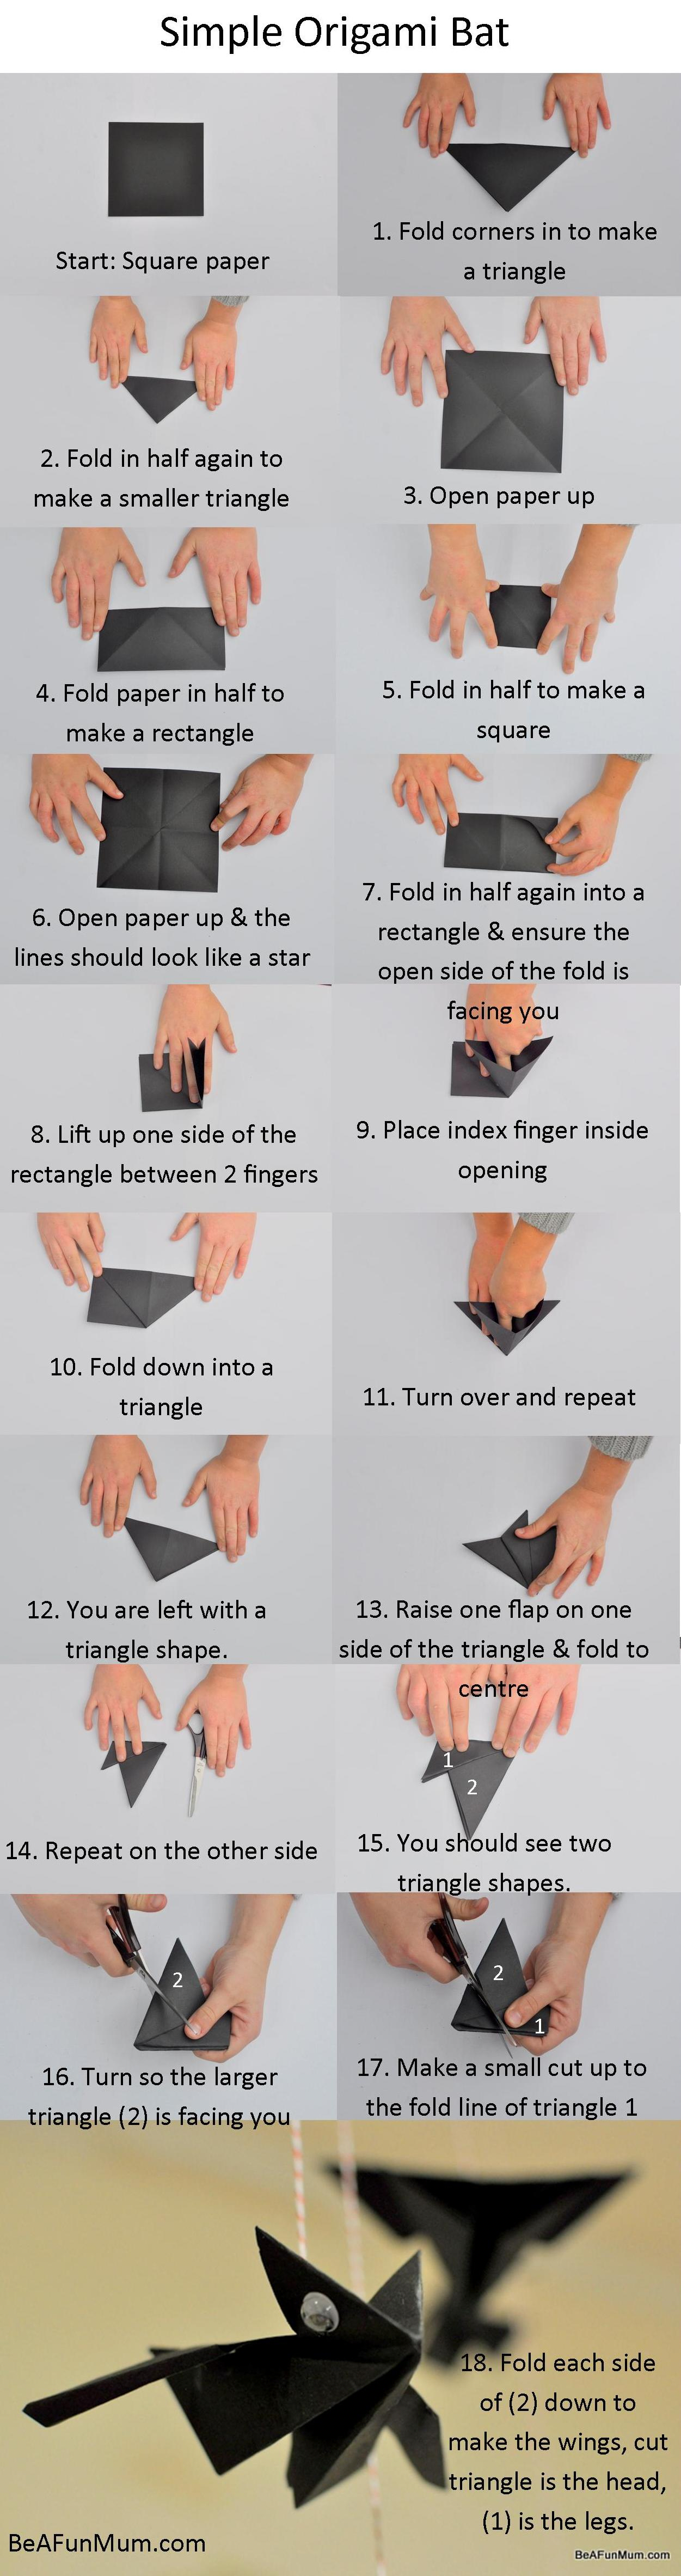 Simple Origami Instructions Simple Origami Bat Be A Fun Mum